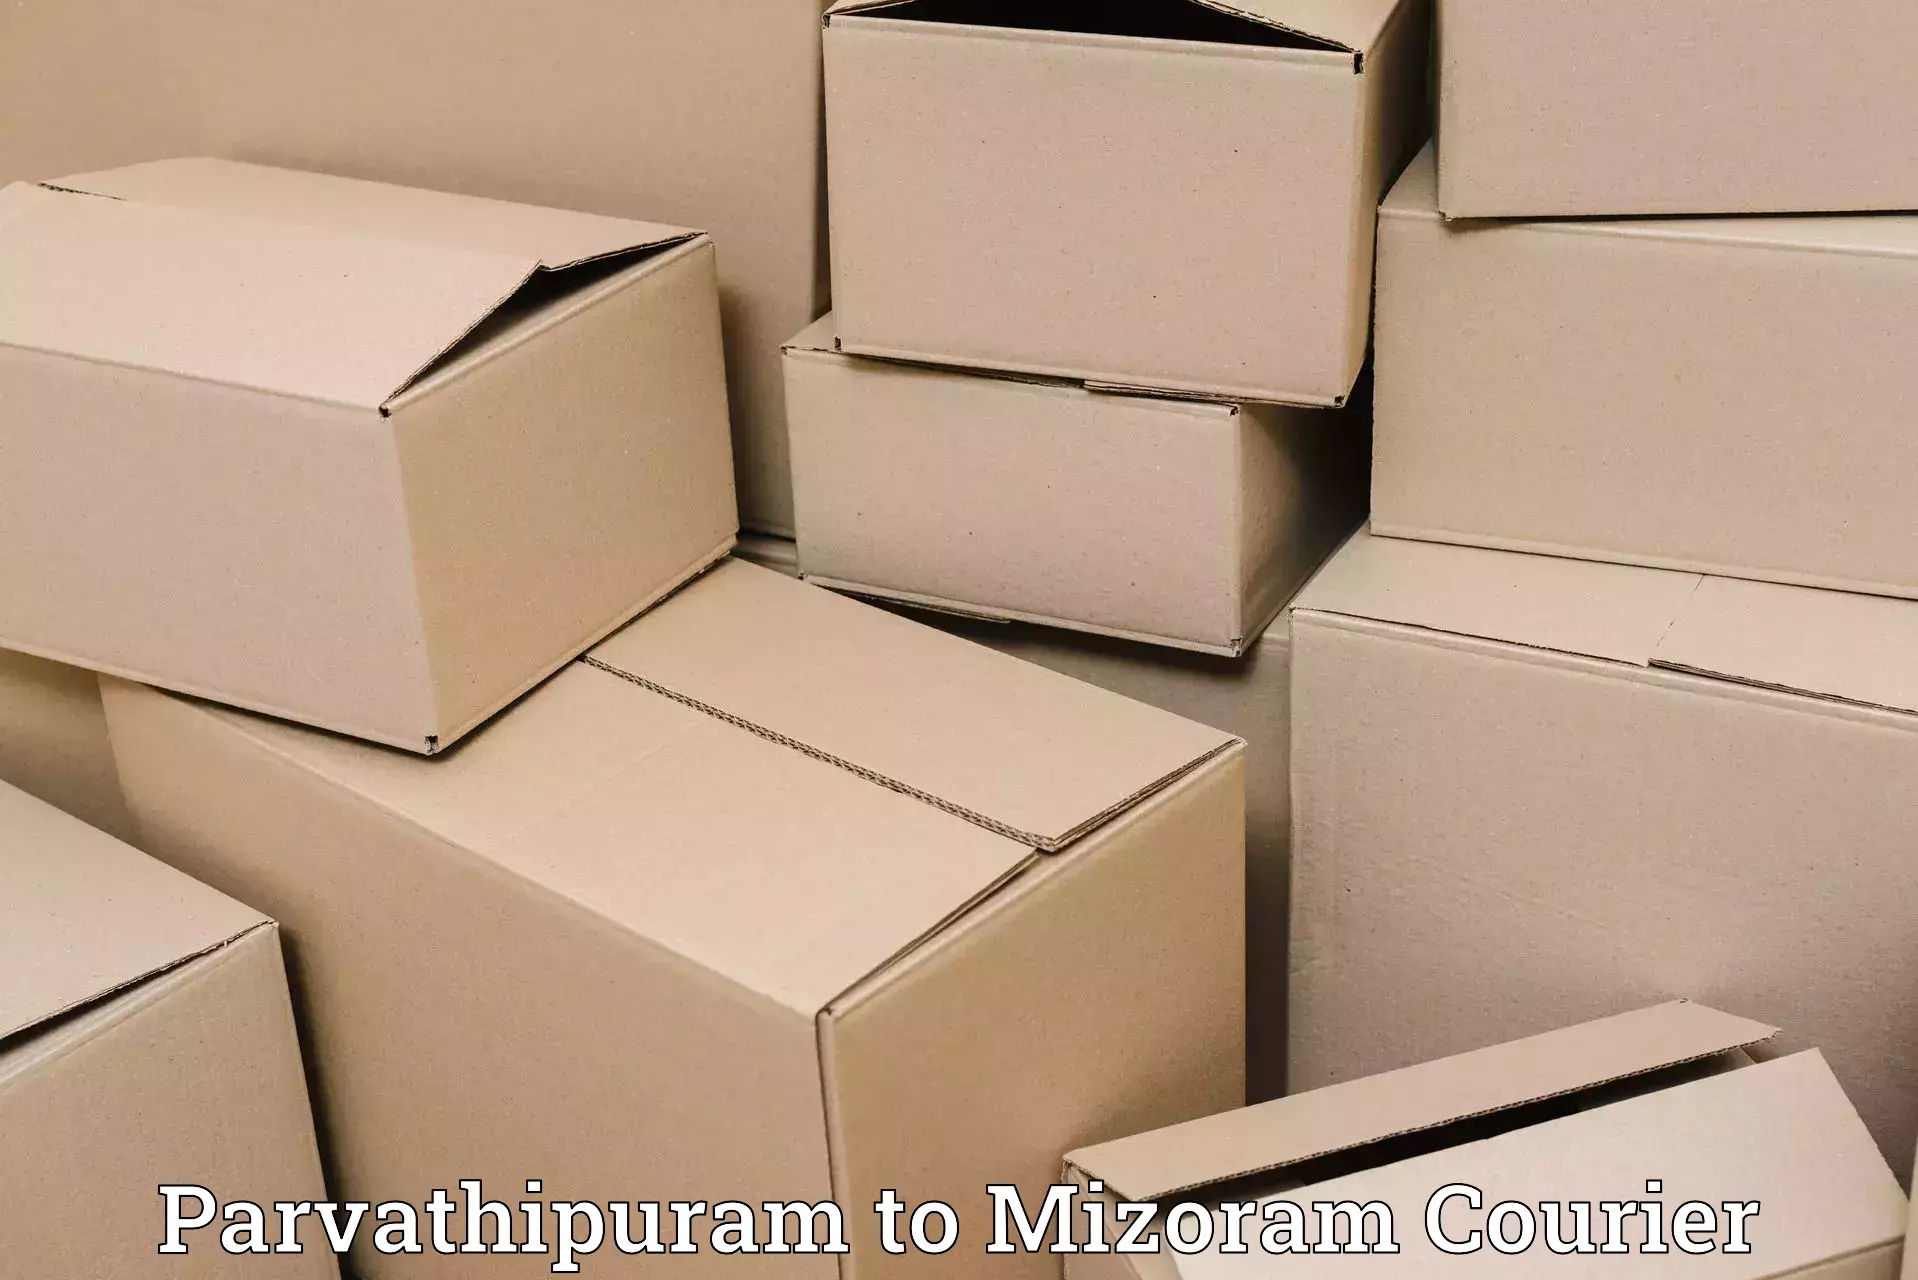 Courier service comparison Parvathipuram to Aizawl